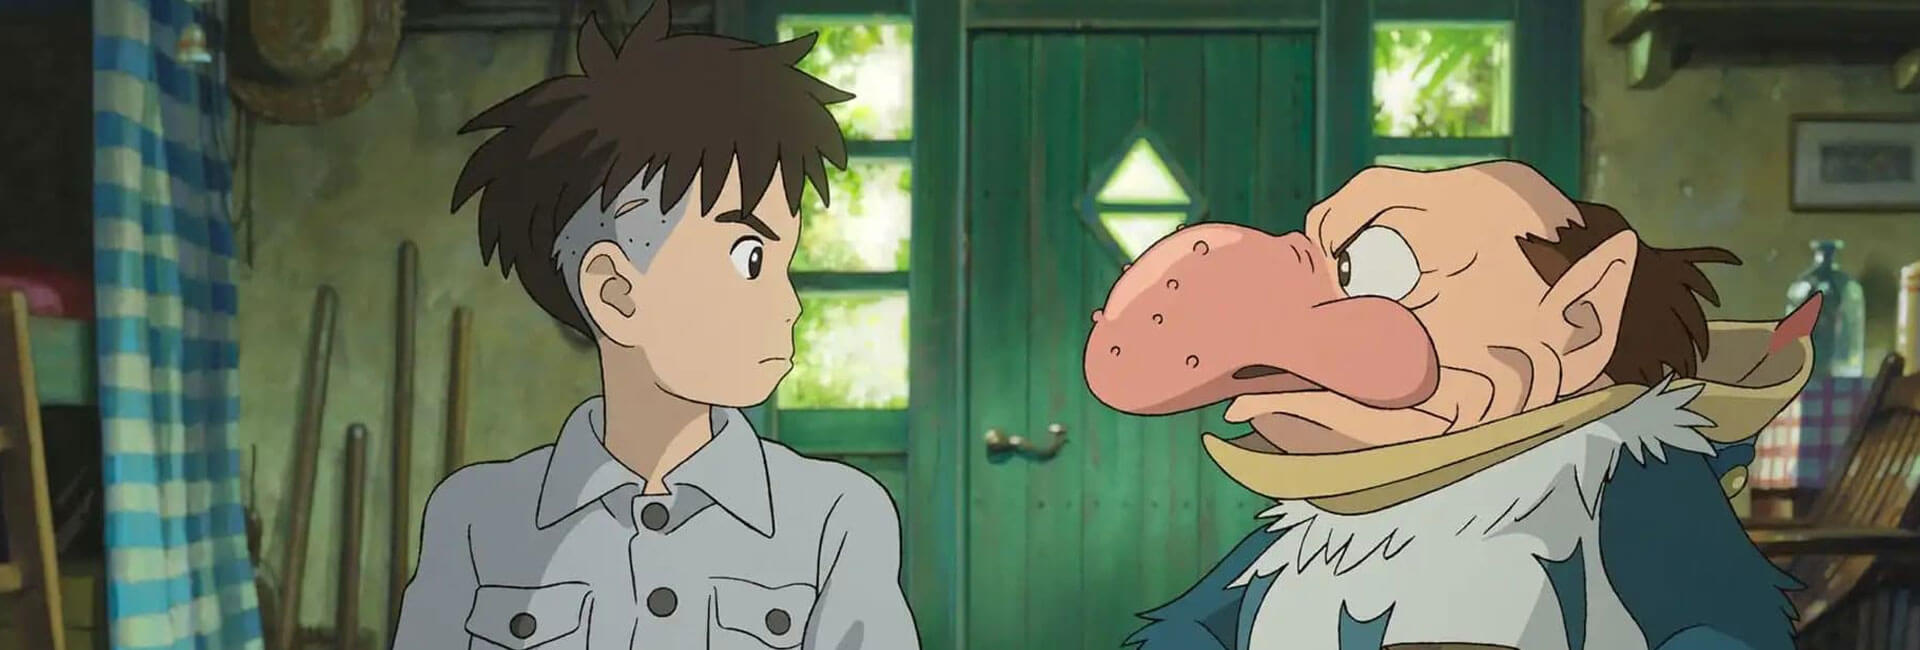 ‘El niño y la garza’: todo sobre la película de Miyazaki y su estreno en México